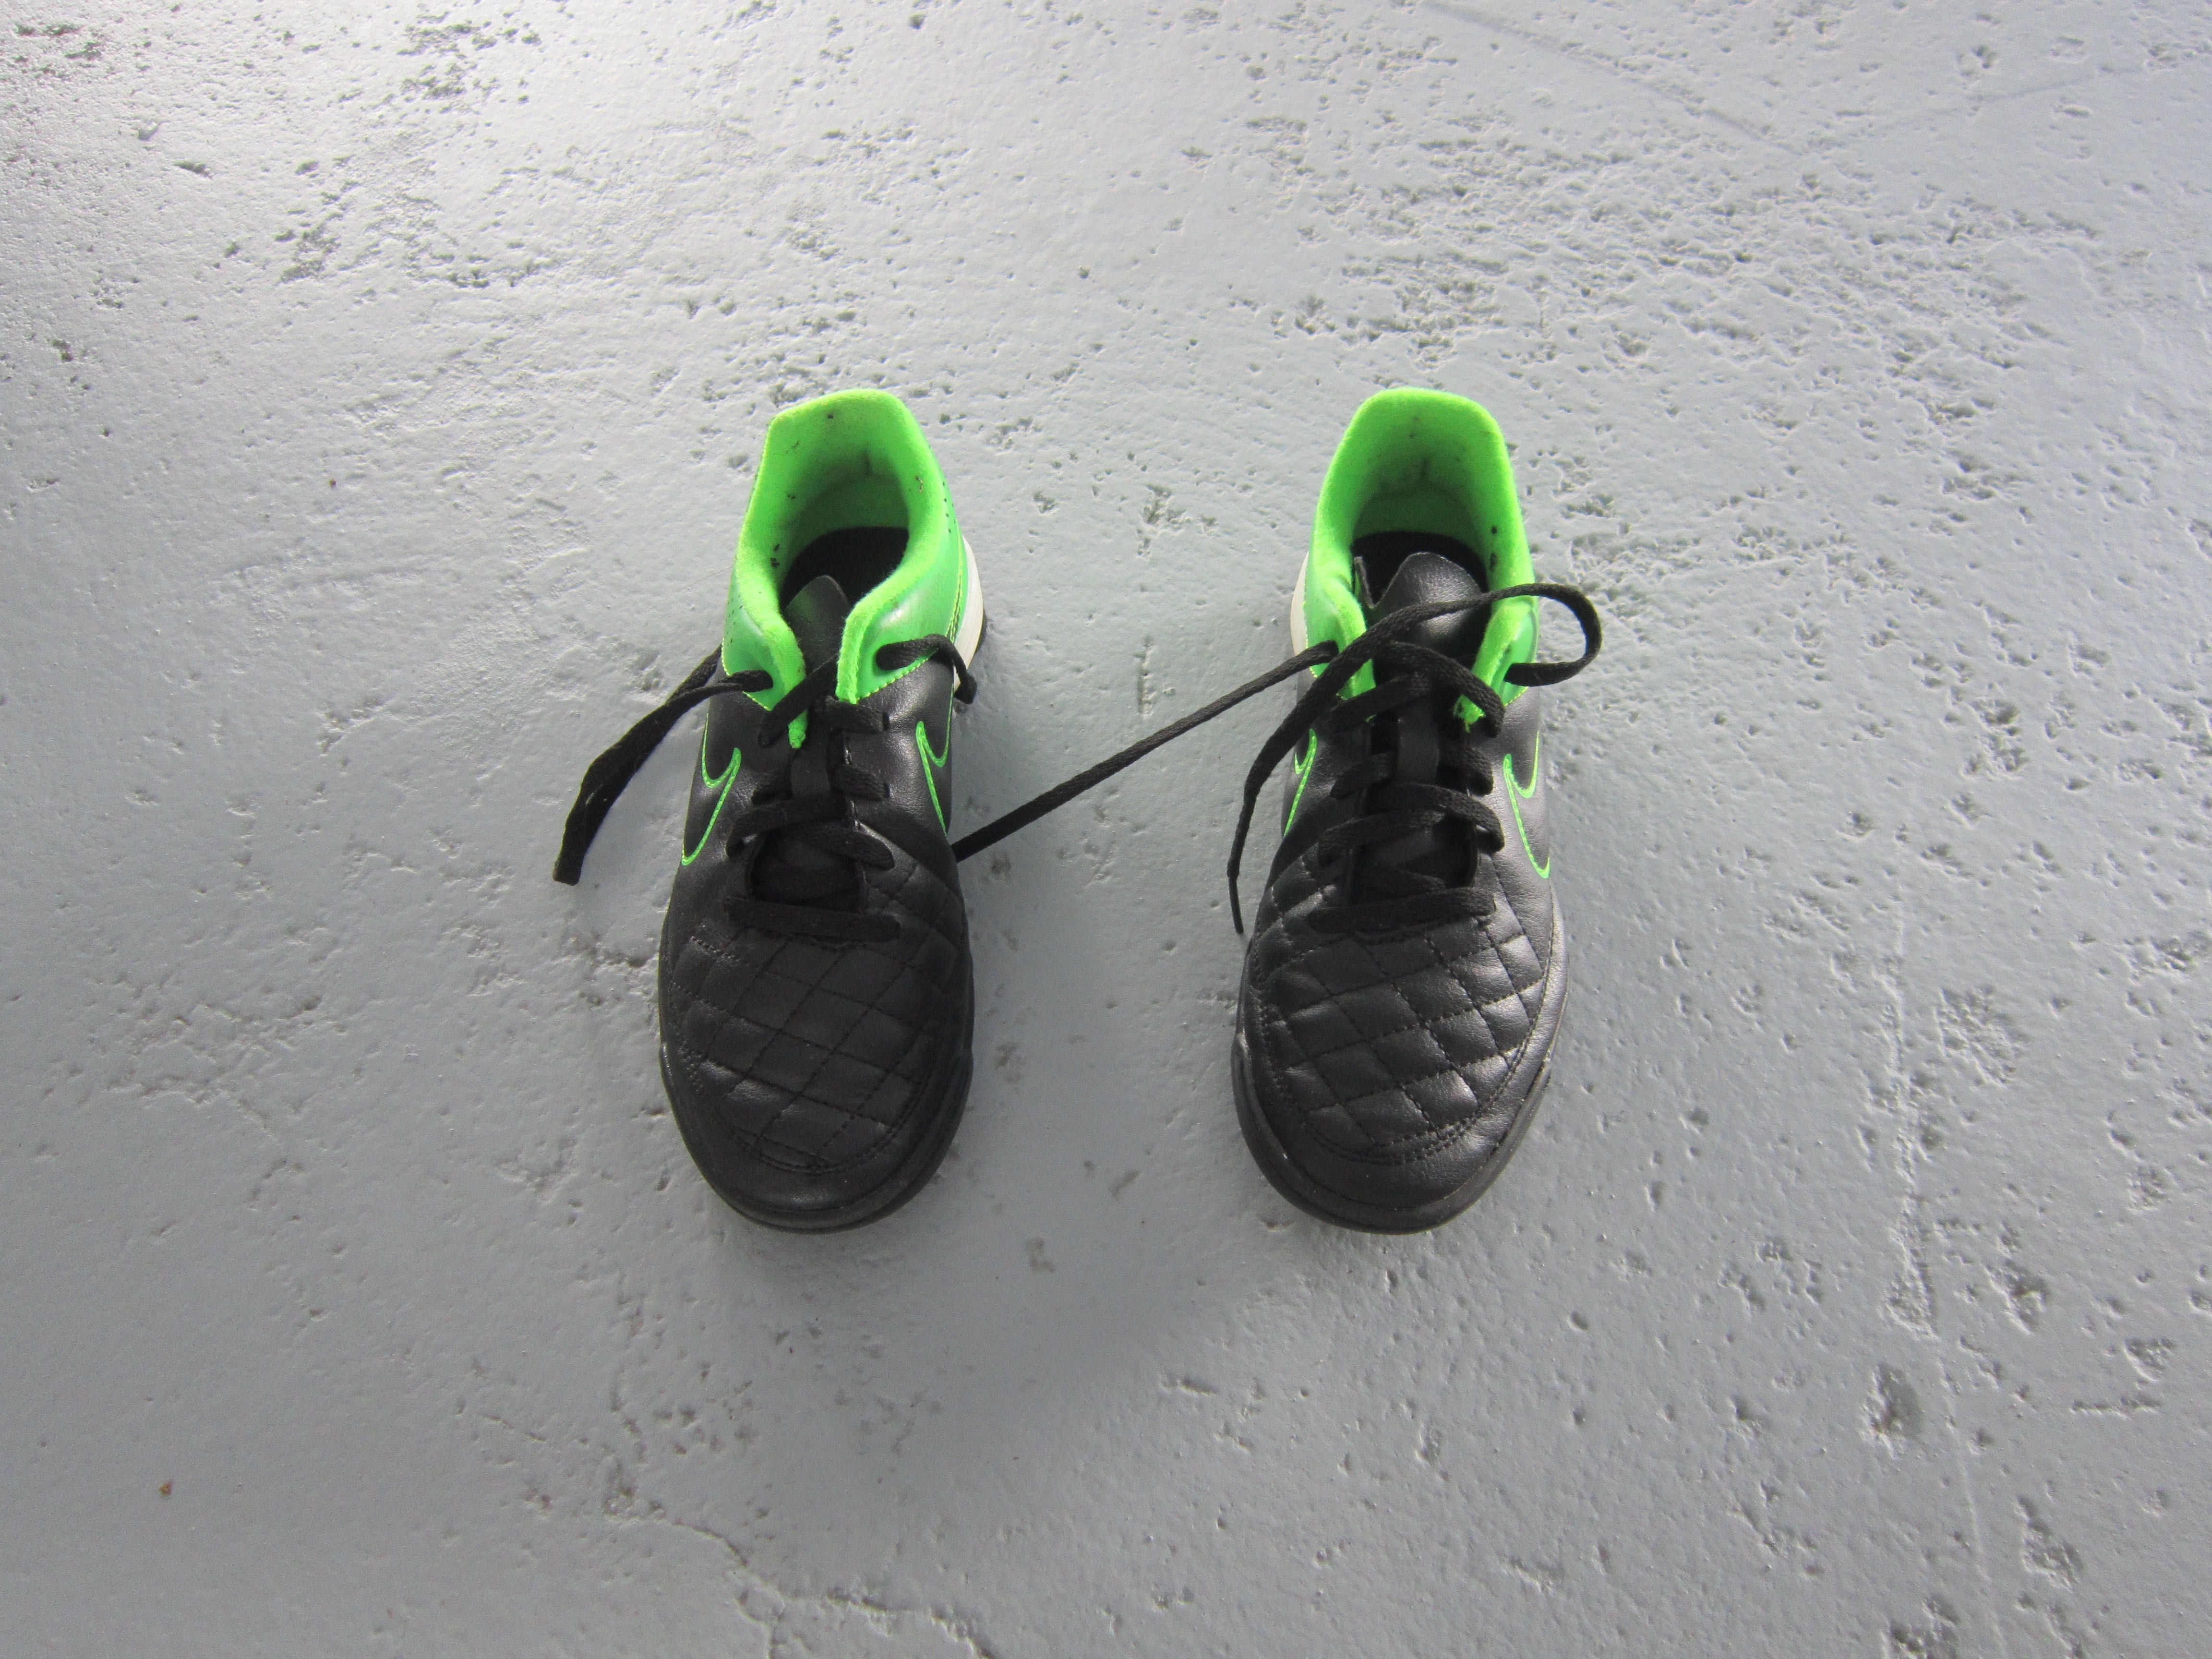 Chuteiras Nike n. 33,5 e caneleiras de futebol